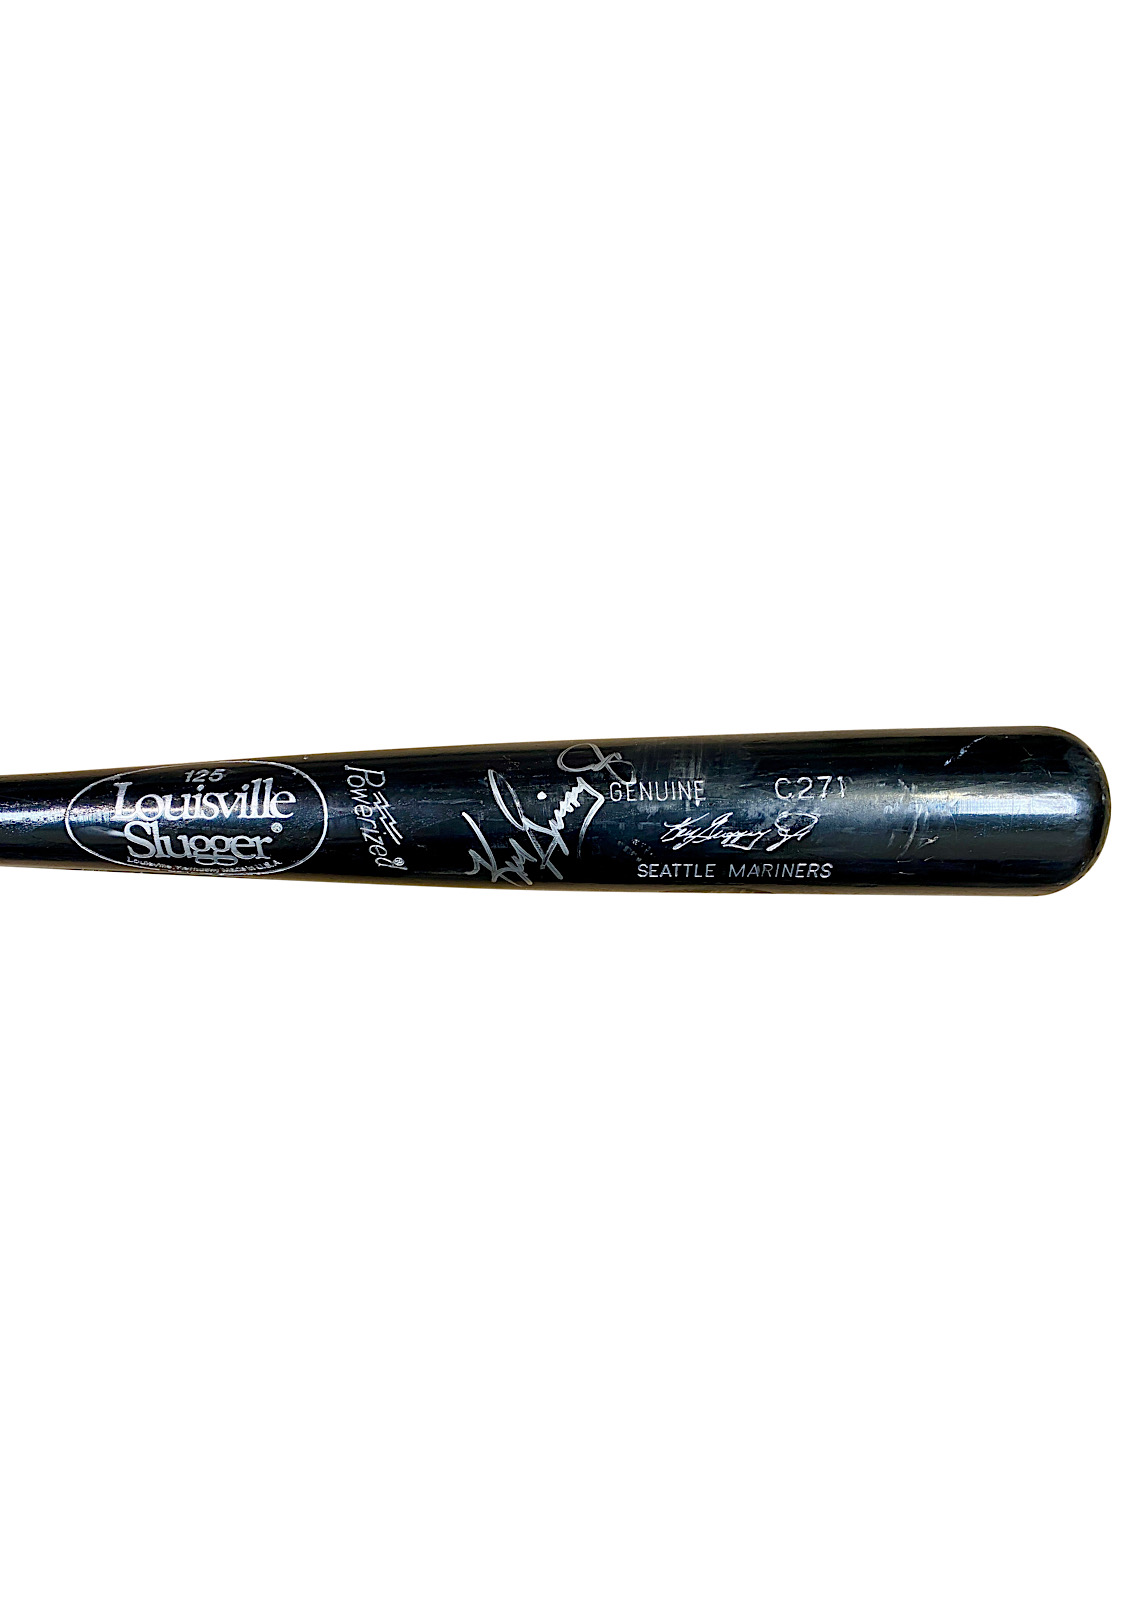 Ken Griffey Jr. Autographed Louisville Slugger Game Model Bat